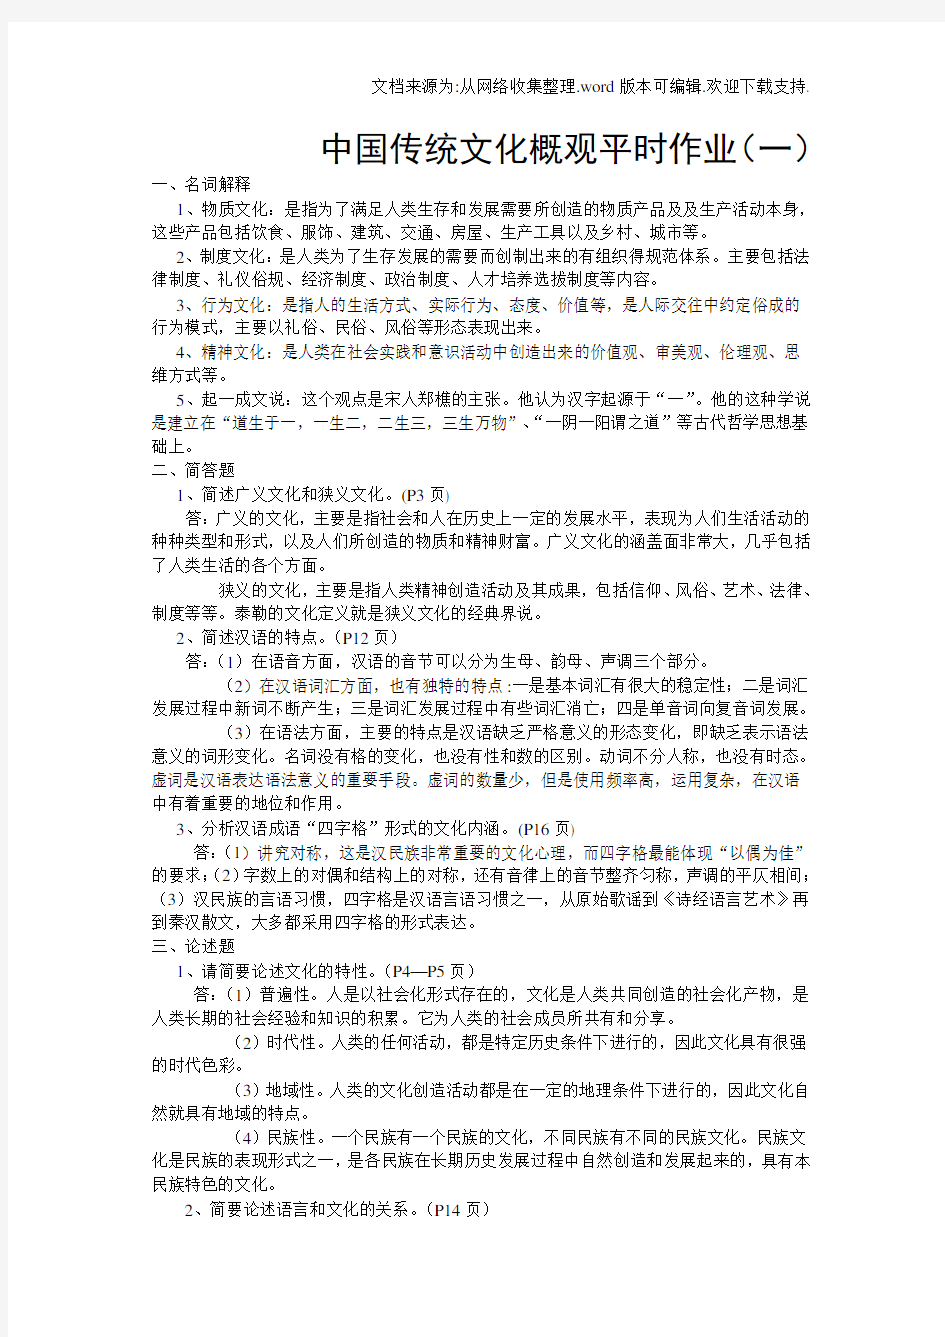 中国传统文化概观平时作业答案(供参考)